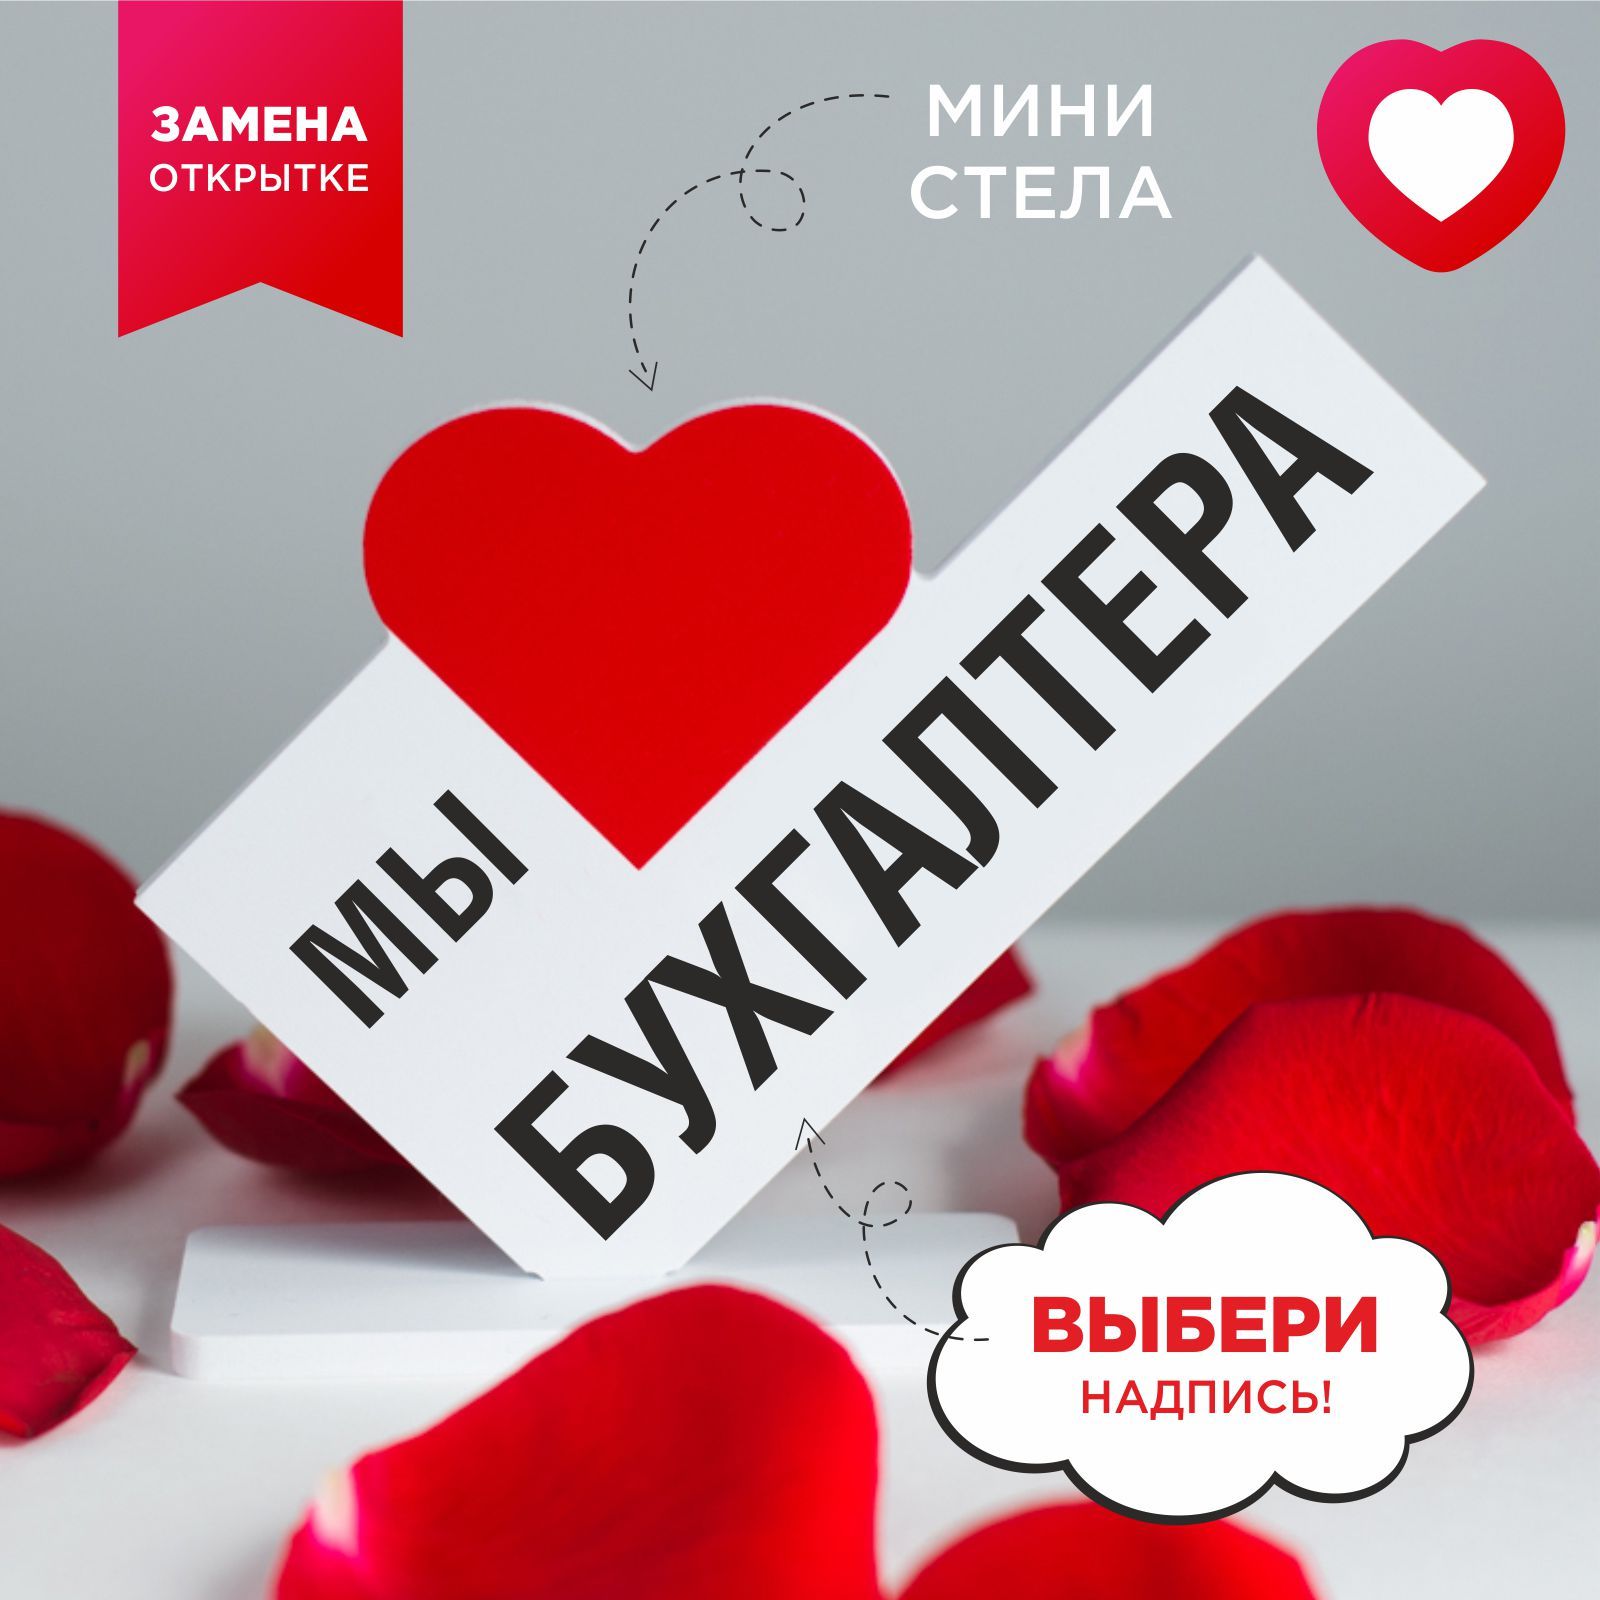 Подарки на 23 февраля за 200 рублей